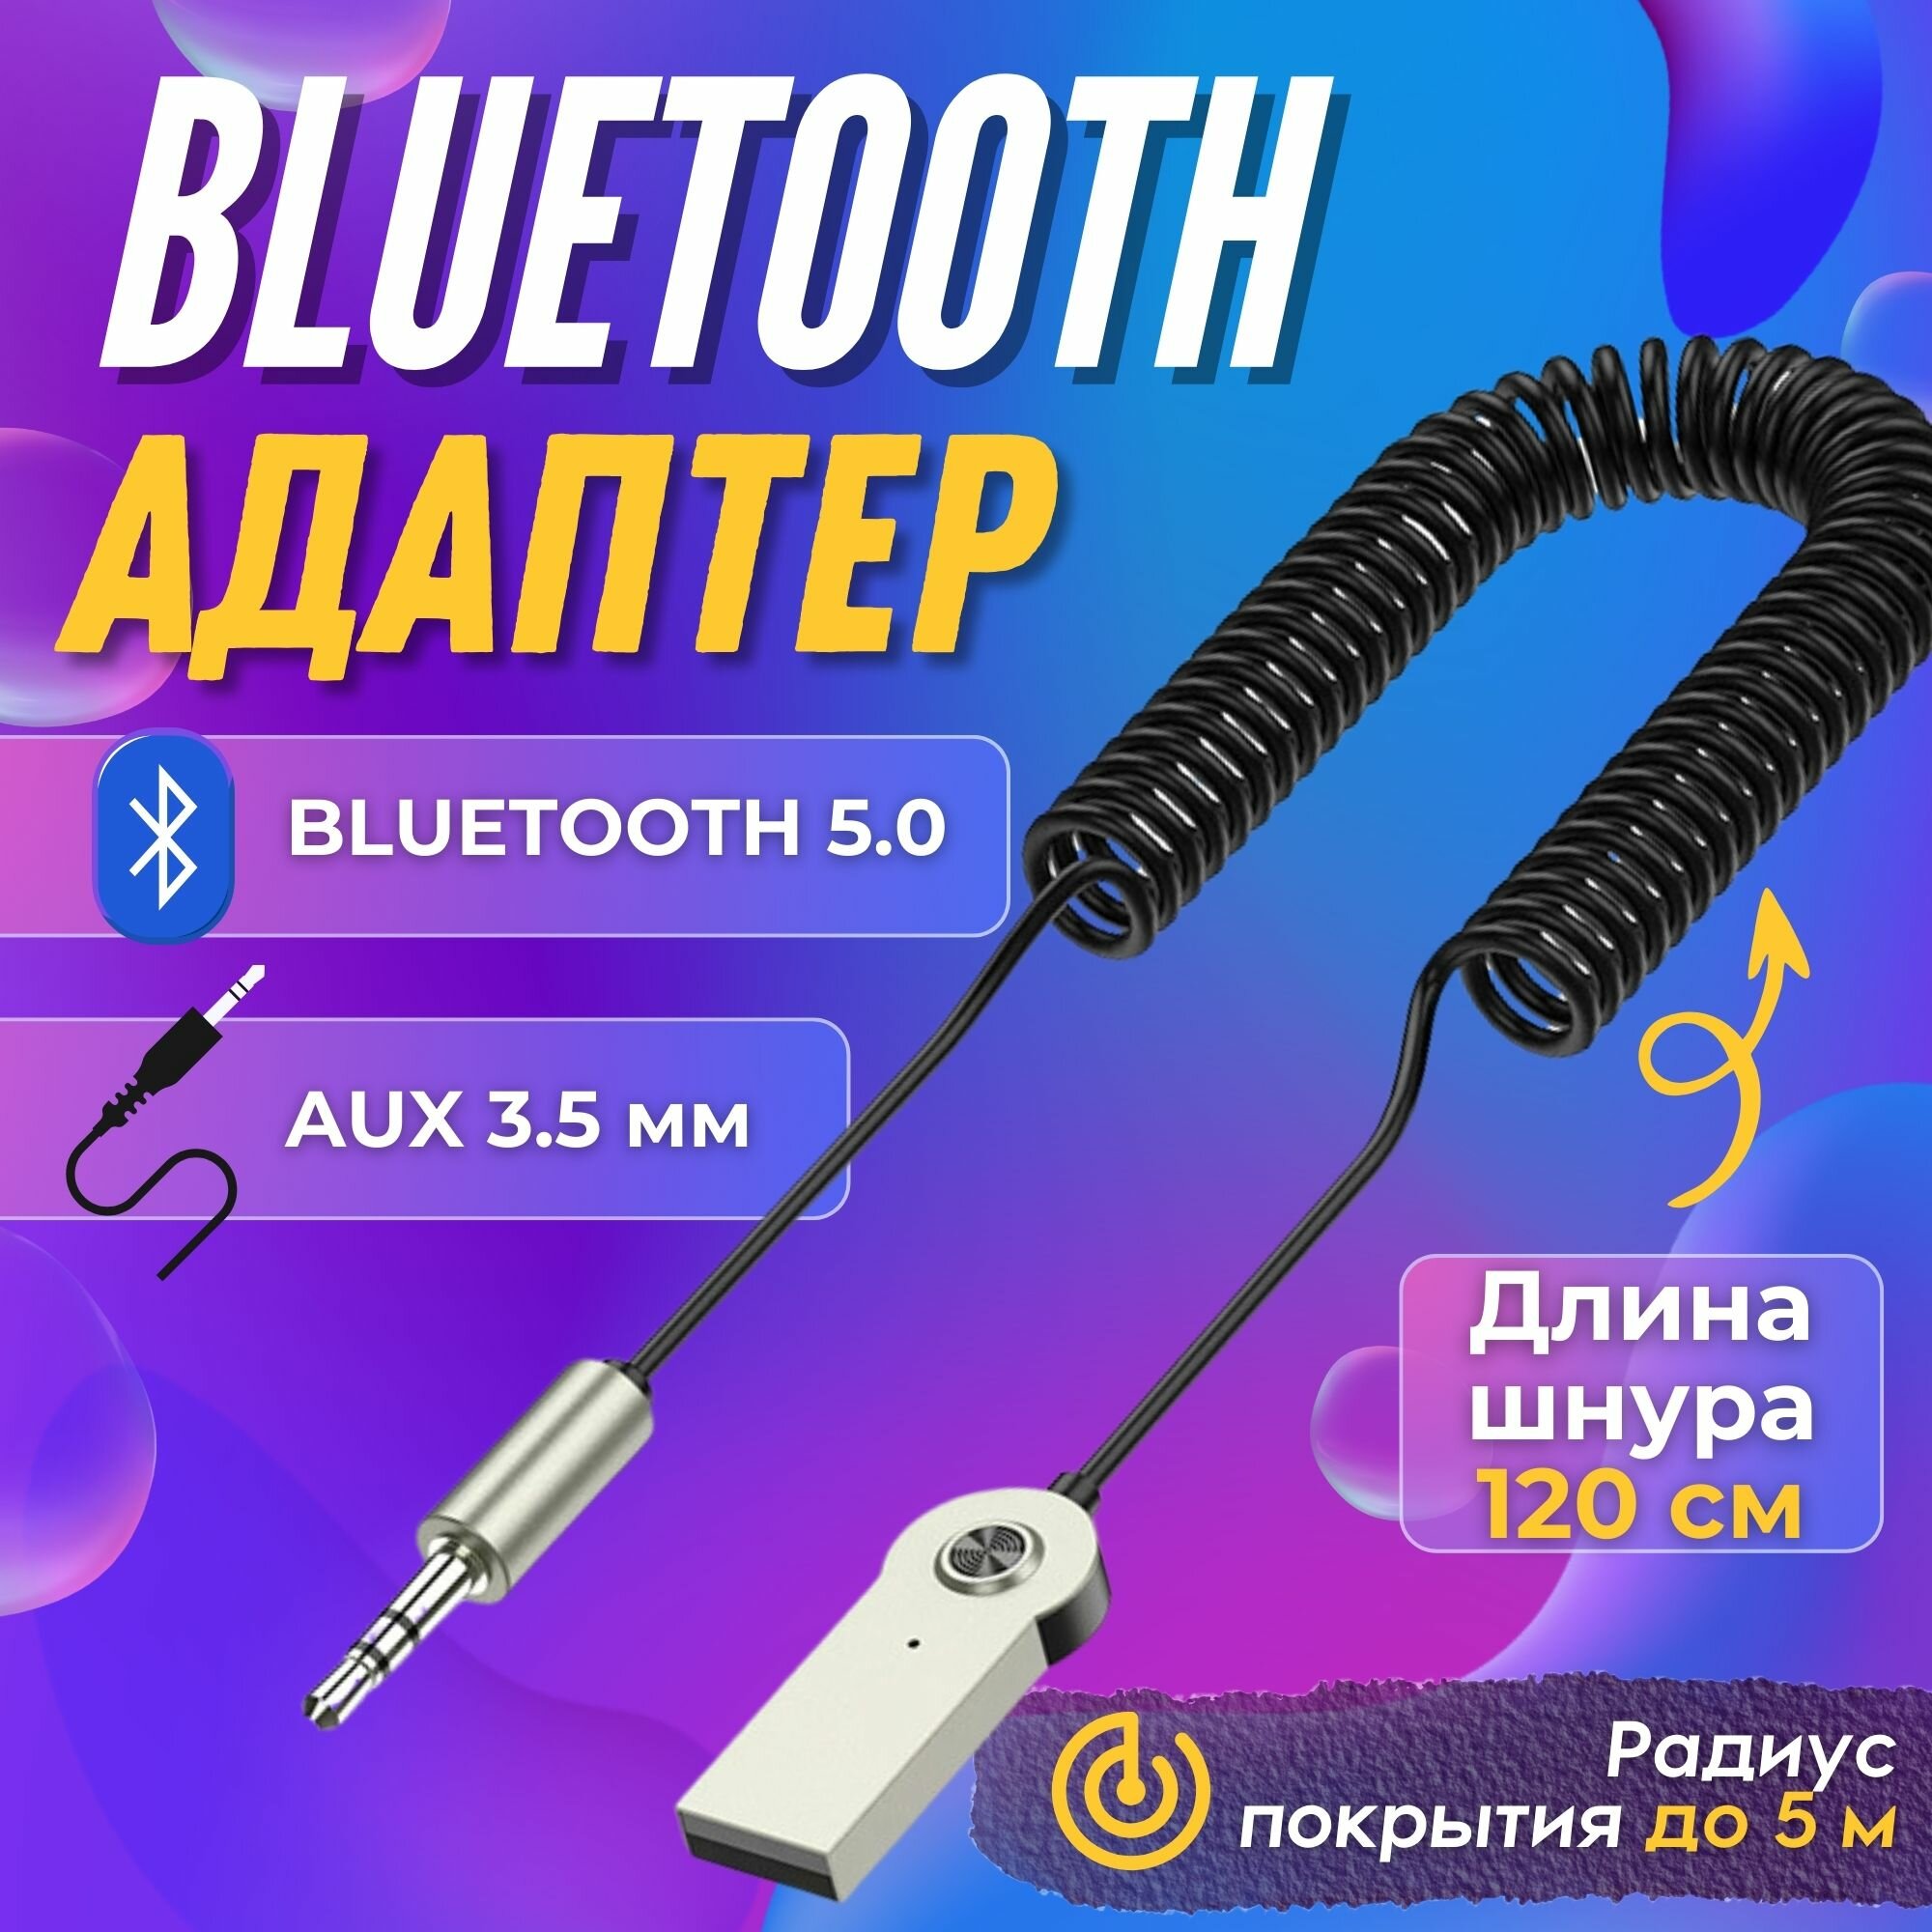 Автомобильный Bluetooth AUX/ Адаптер Bluetooth / Универсальный 3.5 мм